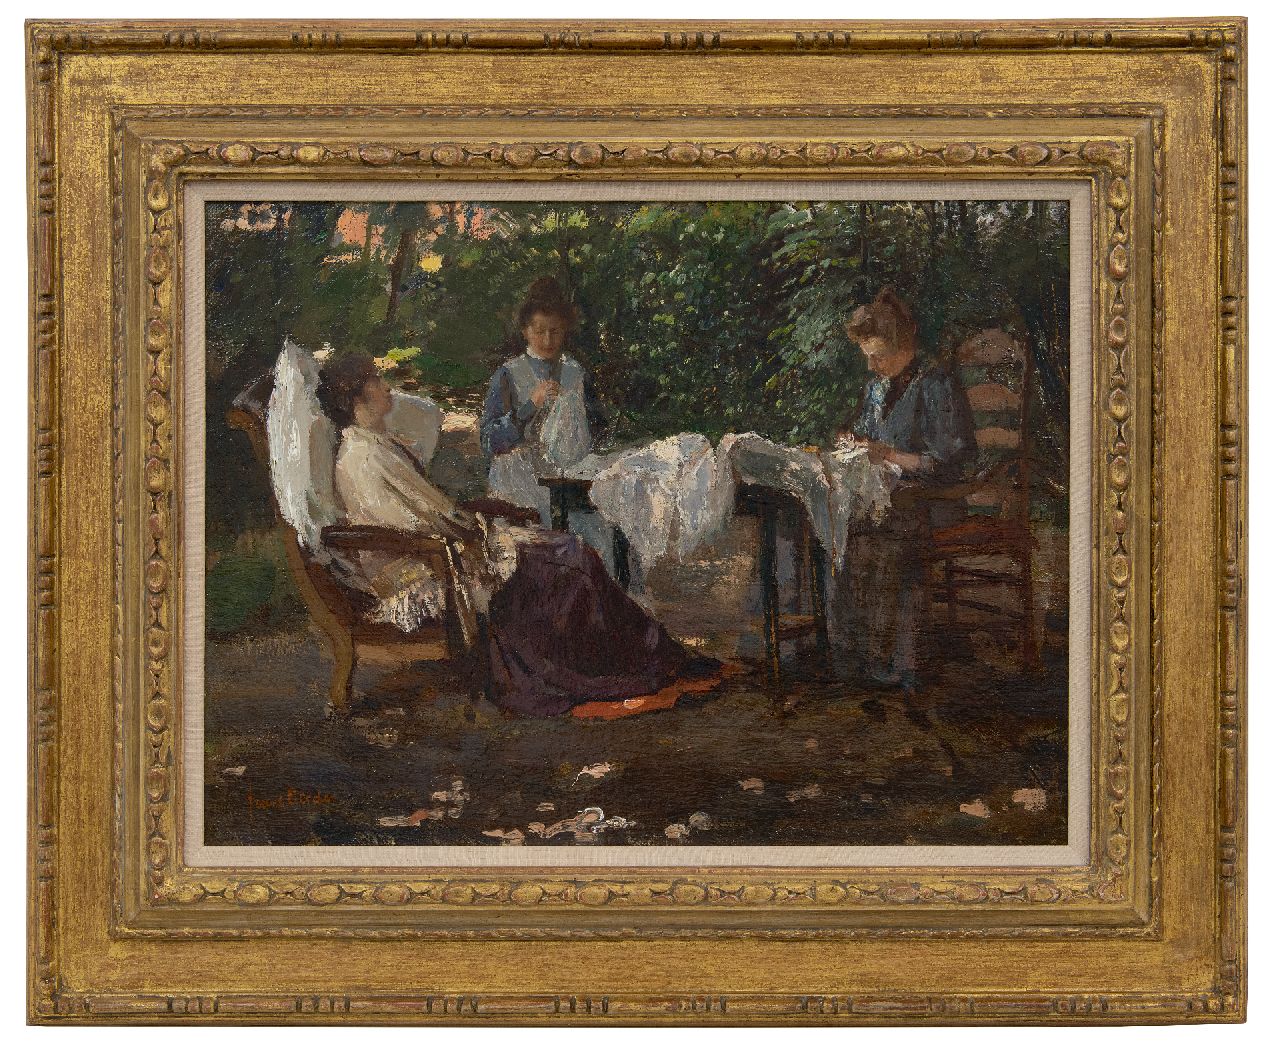 Oerder F.D.  | 'Frans' David Oerder | Schilderijen te koop aangeboden | Een rustige middag in lommerrijke tuin, olieverf op doek 37,3 x 50,5 cm, gesigneerd linksonder